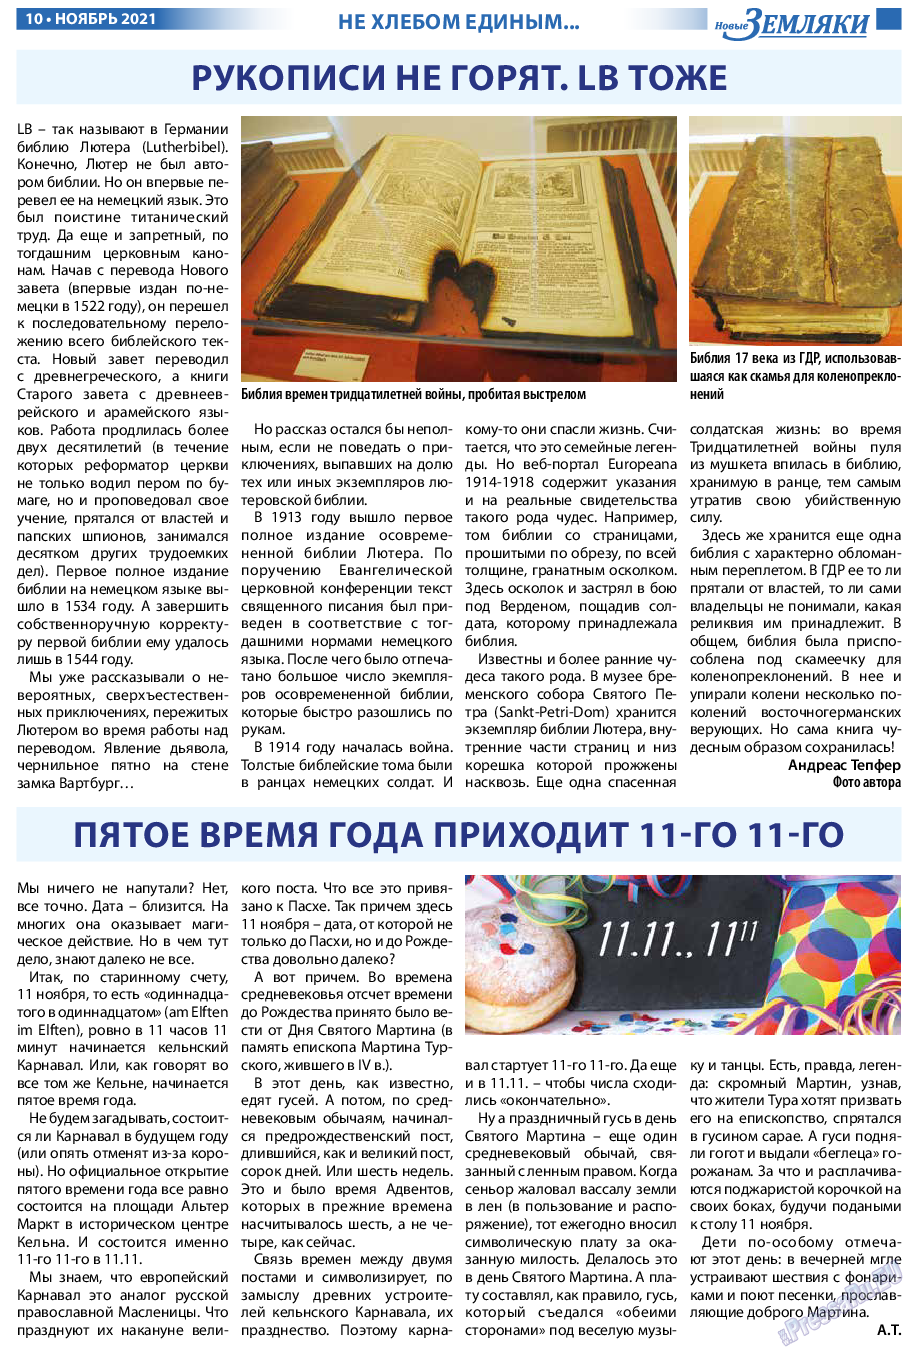 Новые Земляки, газета. 2021 №11 стр.10